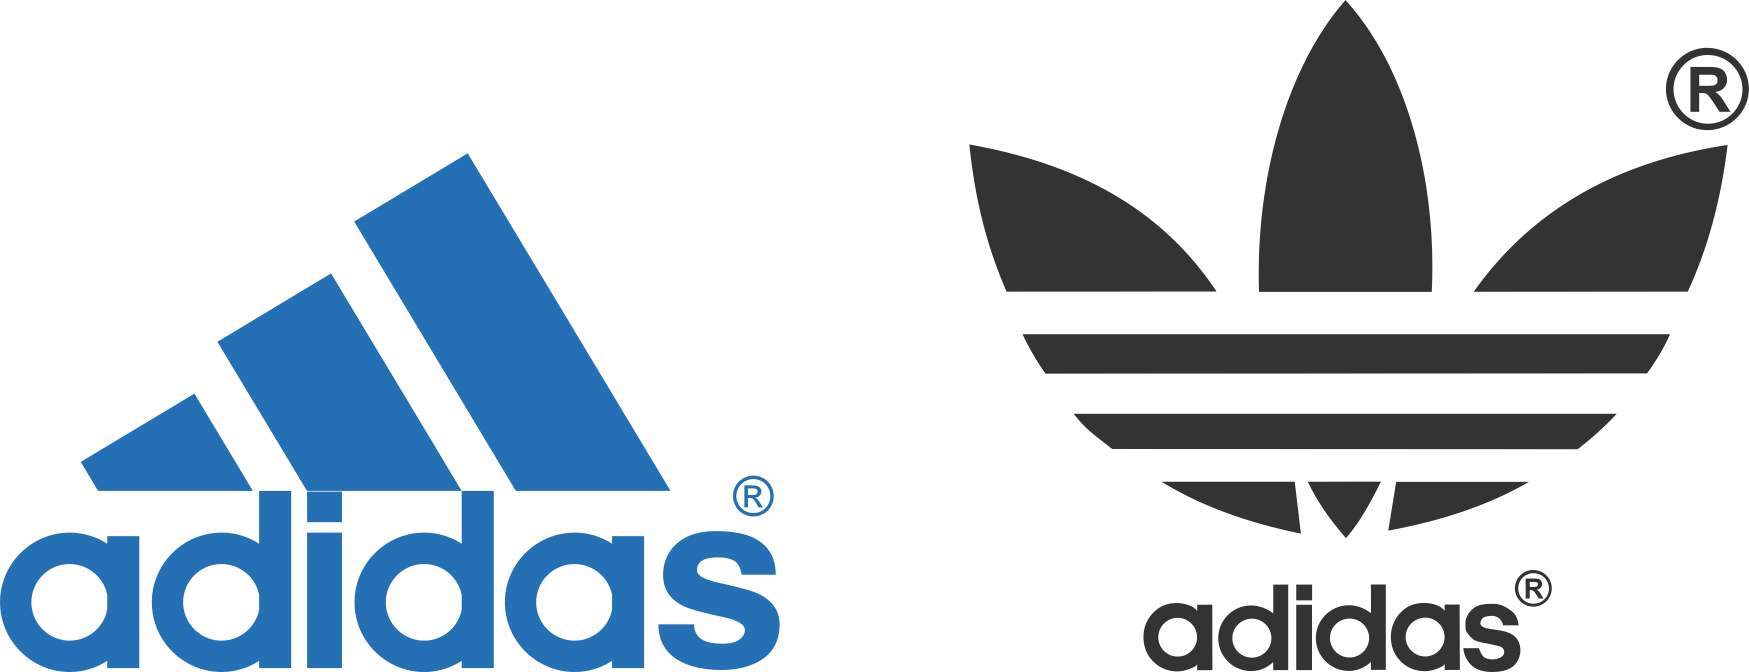 Làm thế nào để chỉnh sửa logo Adidas vector?